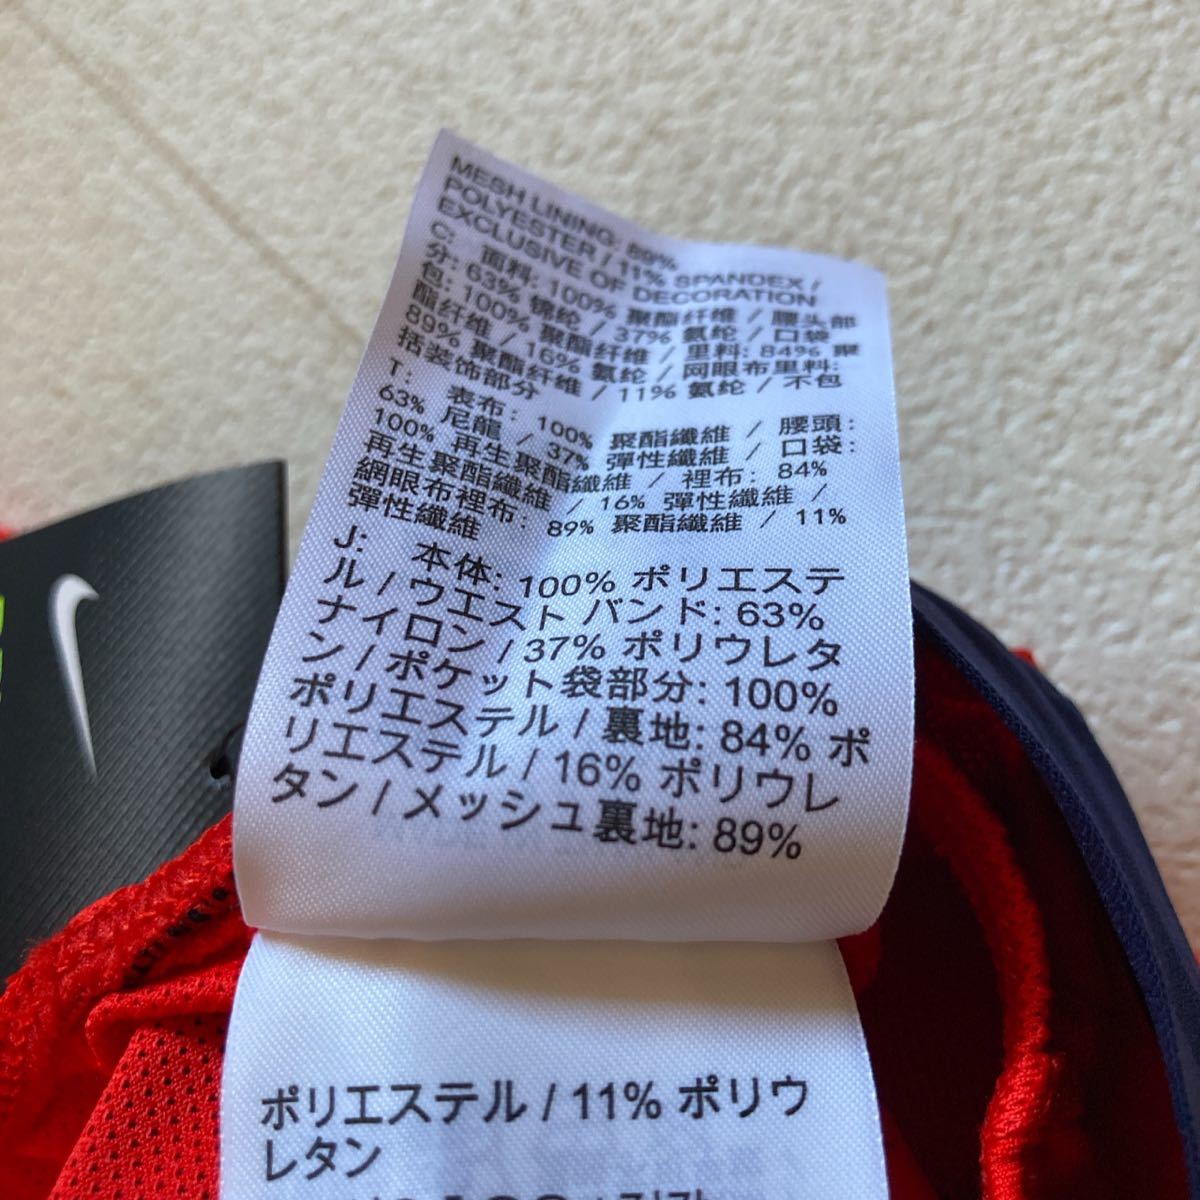 NIKE レッド　ランニング用ショートパンツ　メンズM 定価6600円税込